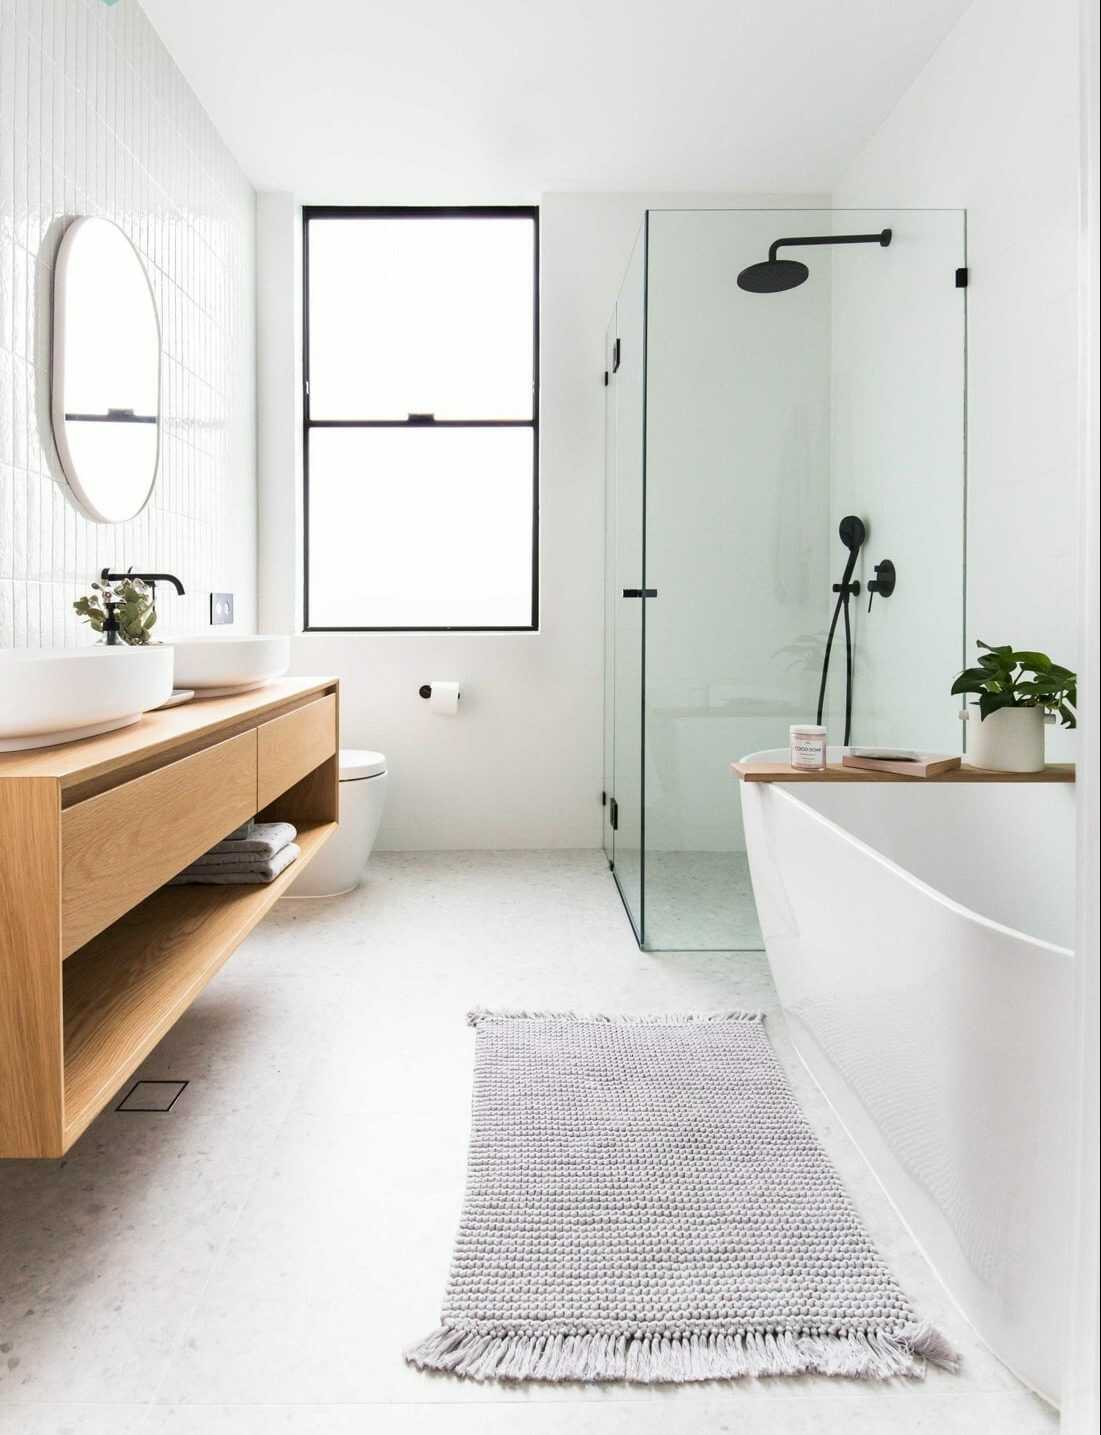 Thiết kế phòng tắm master đẹp chính là lựa chọn đúng đắn cho những ai yêu thích thiết kế nội thất sang trọng, hiện đại và tinh tế. Với sự kết hợp hài hòa giữa màu sắc, ánh sáng và vật liệu, phòng tắm sẽ trở nên đẹp và hút mắt hơn bao giờ hết.